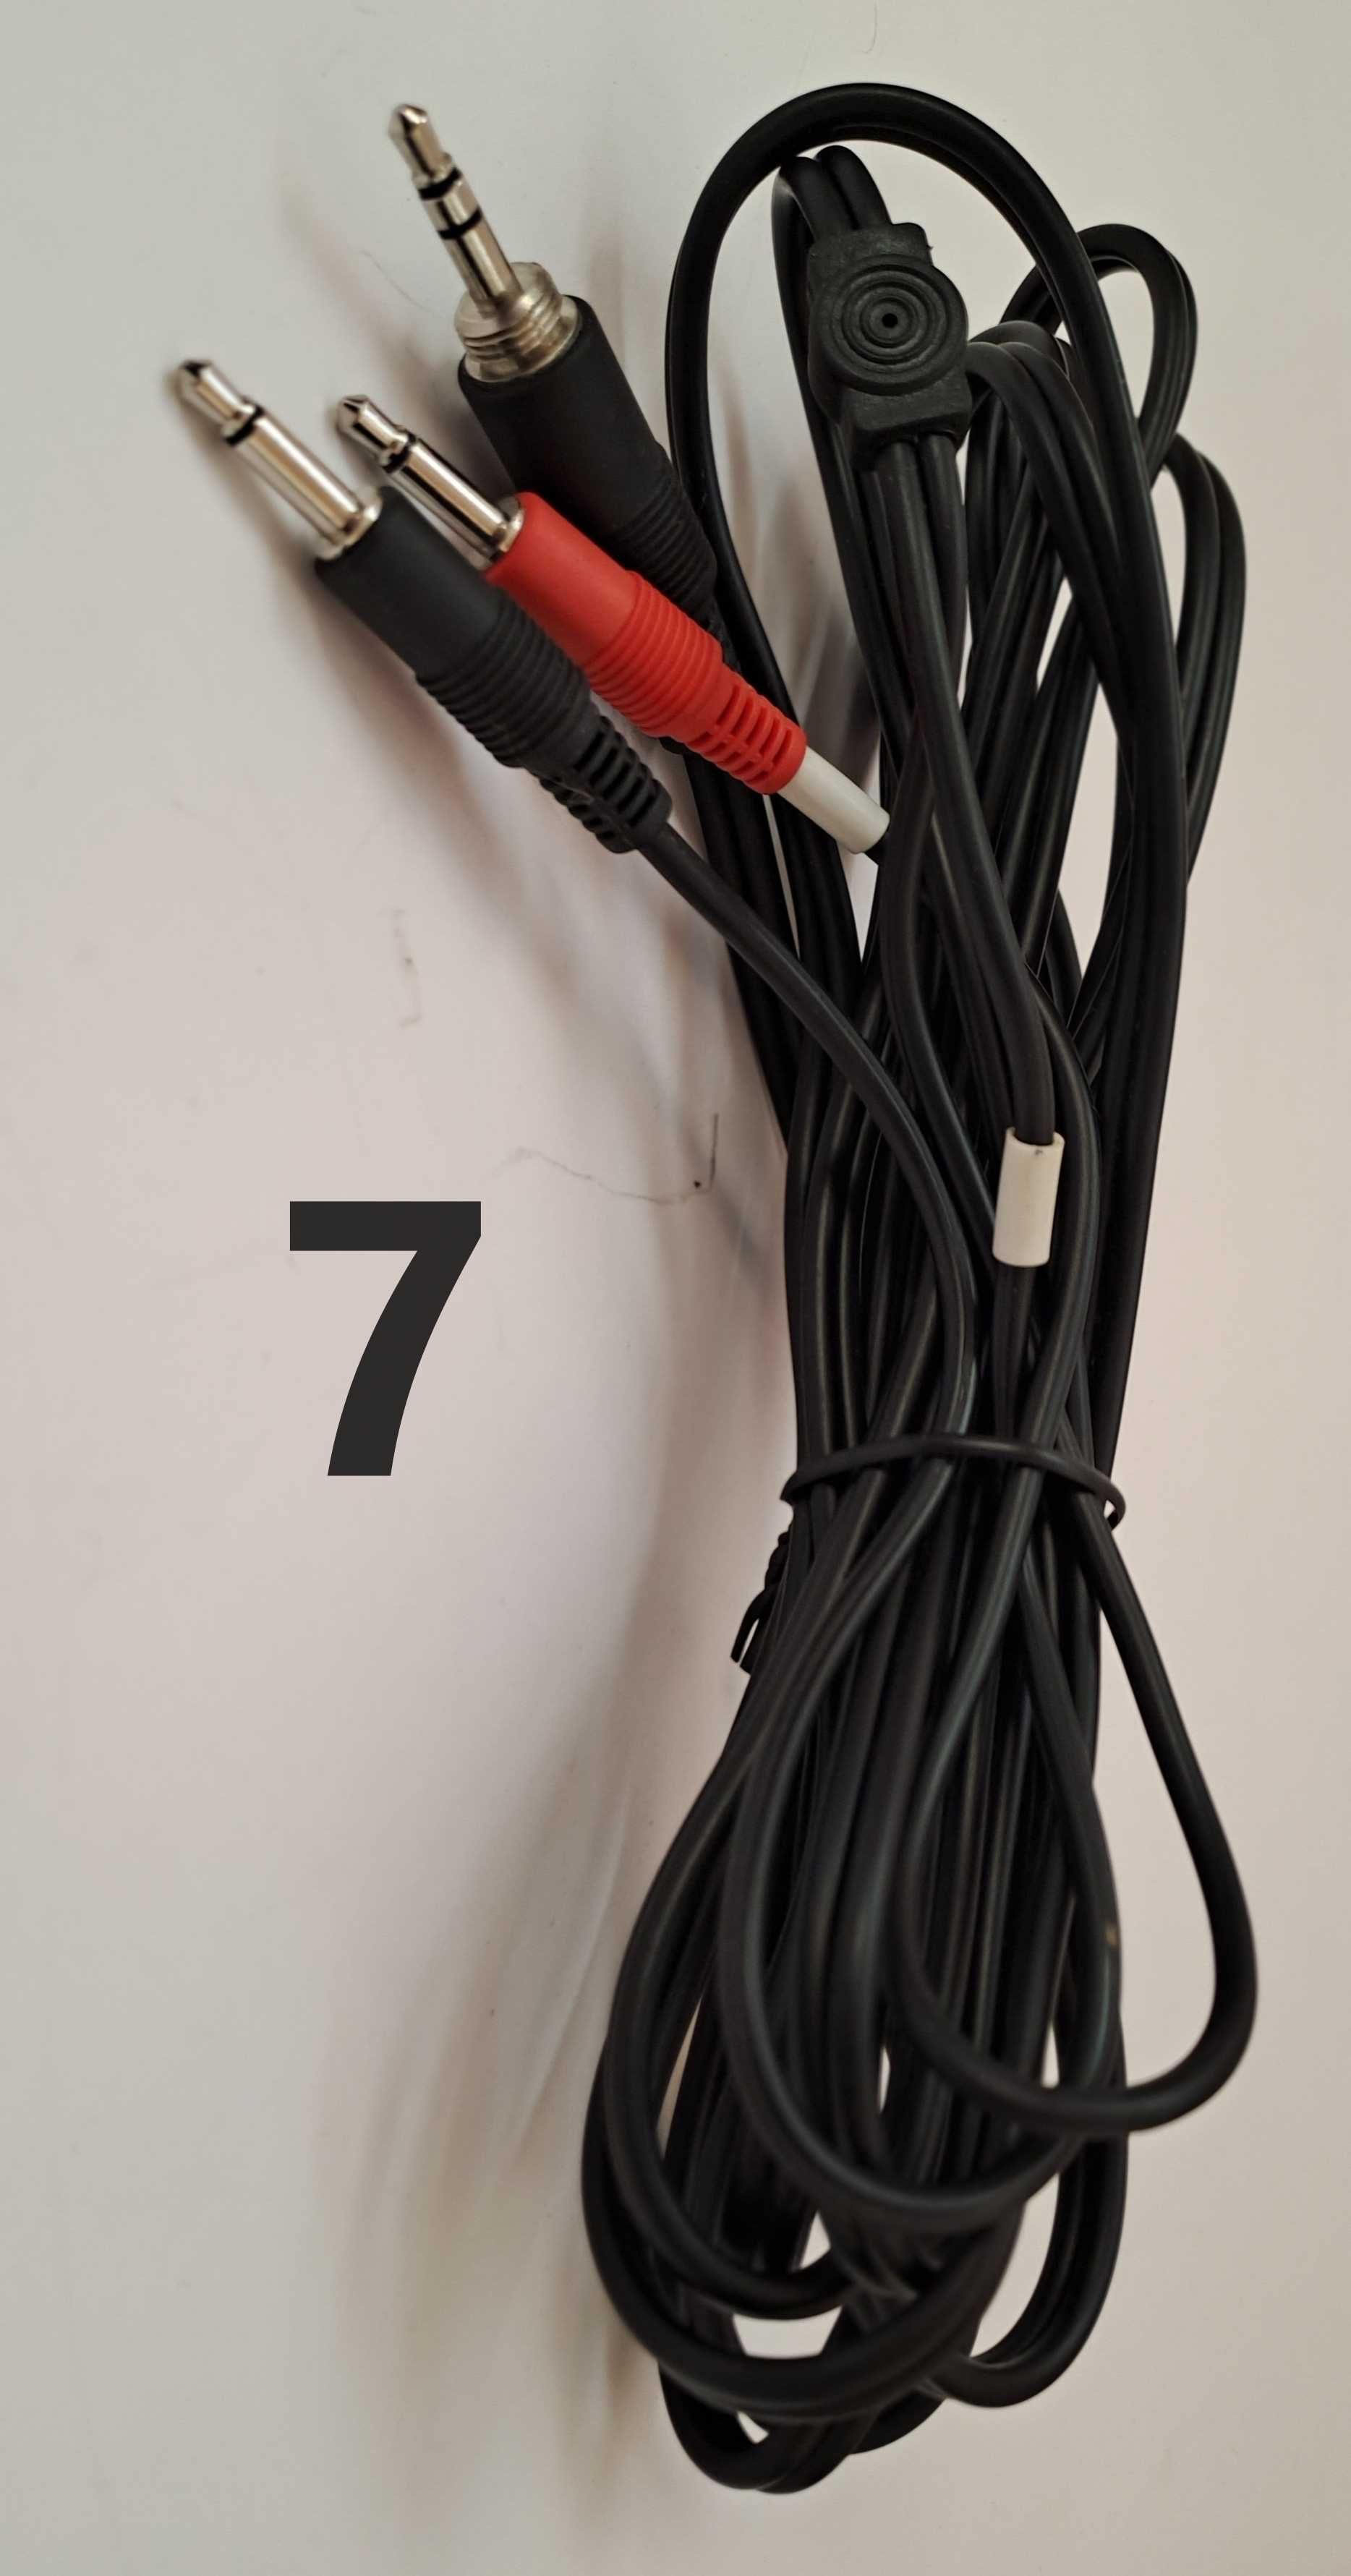 Cabluri conectică